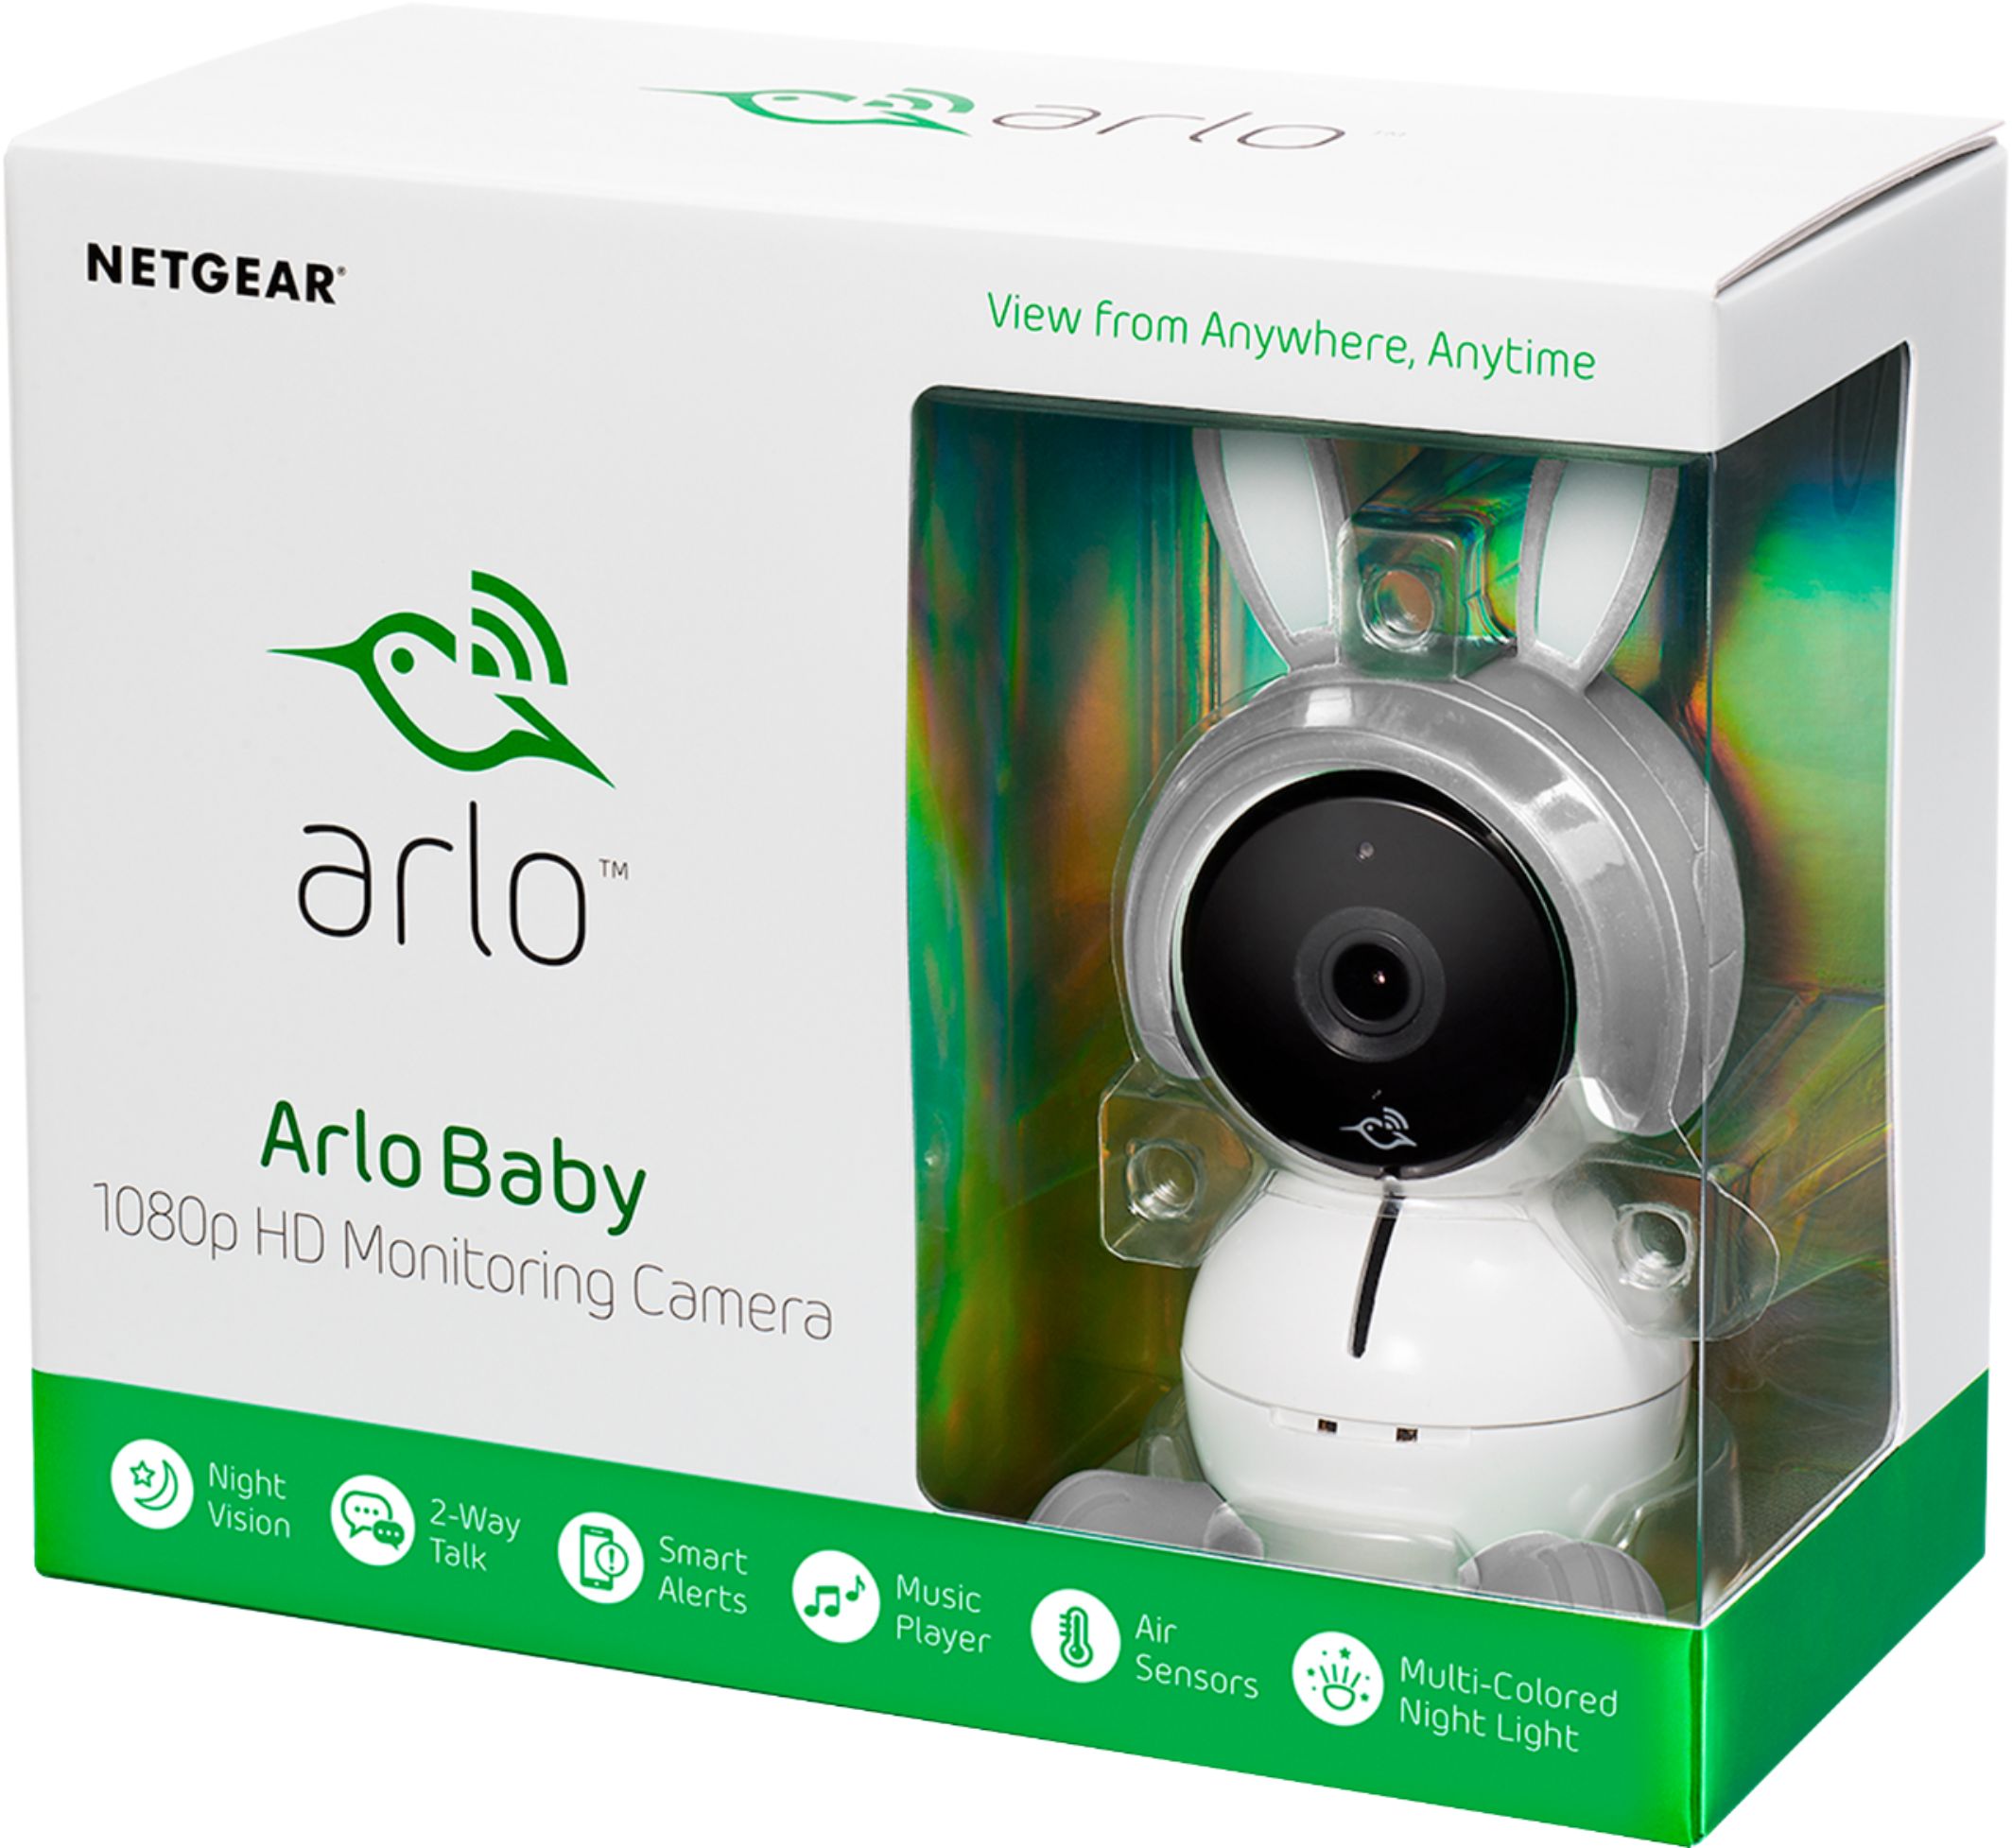 arlo baby 1080p hd monitoring camera review